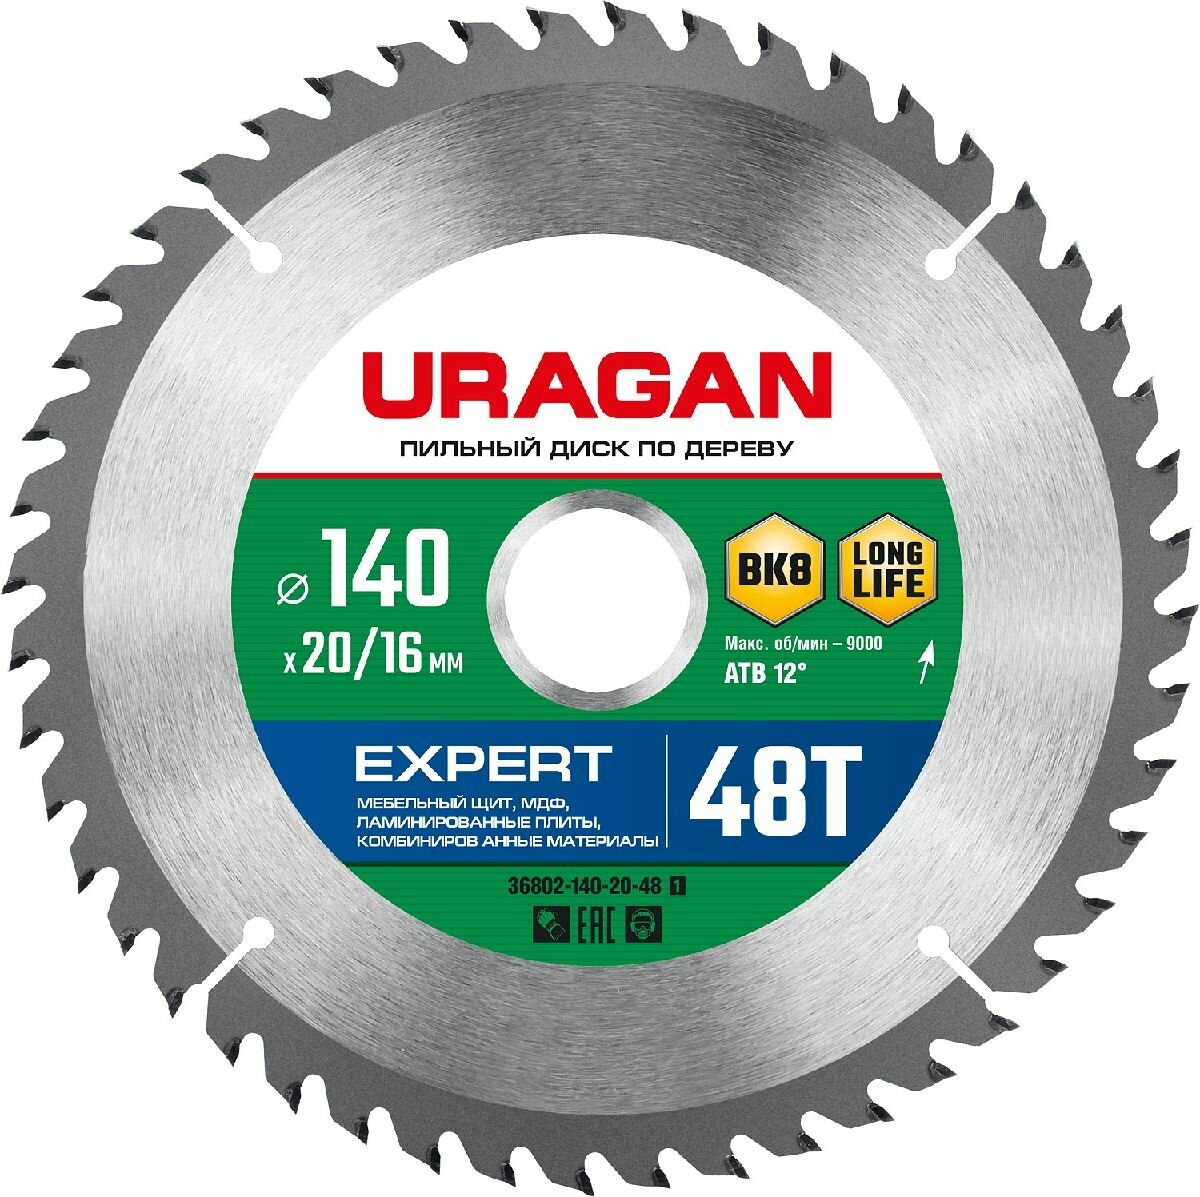 URAGAN Expert 140х20 16мм 48Т диск пильный по дереву (36802-140-20-48_z01)